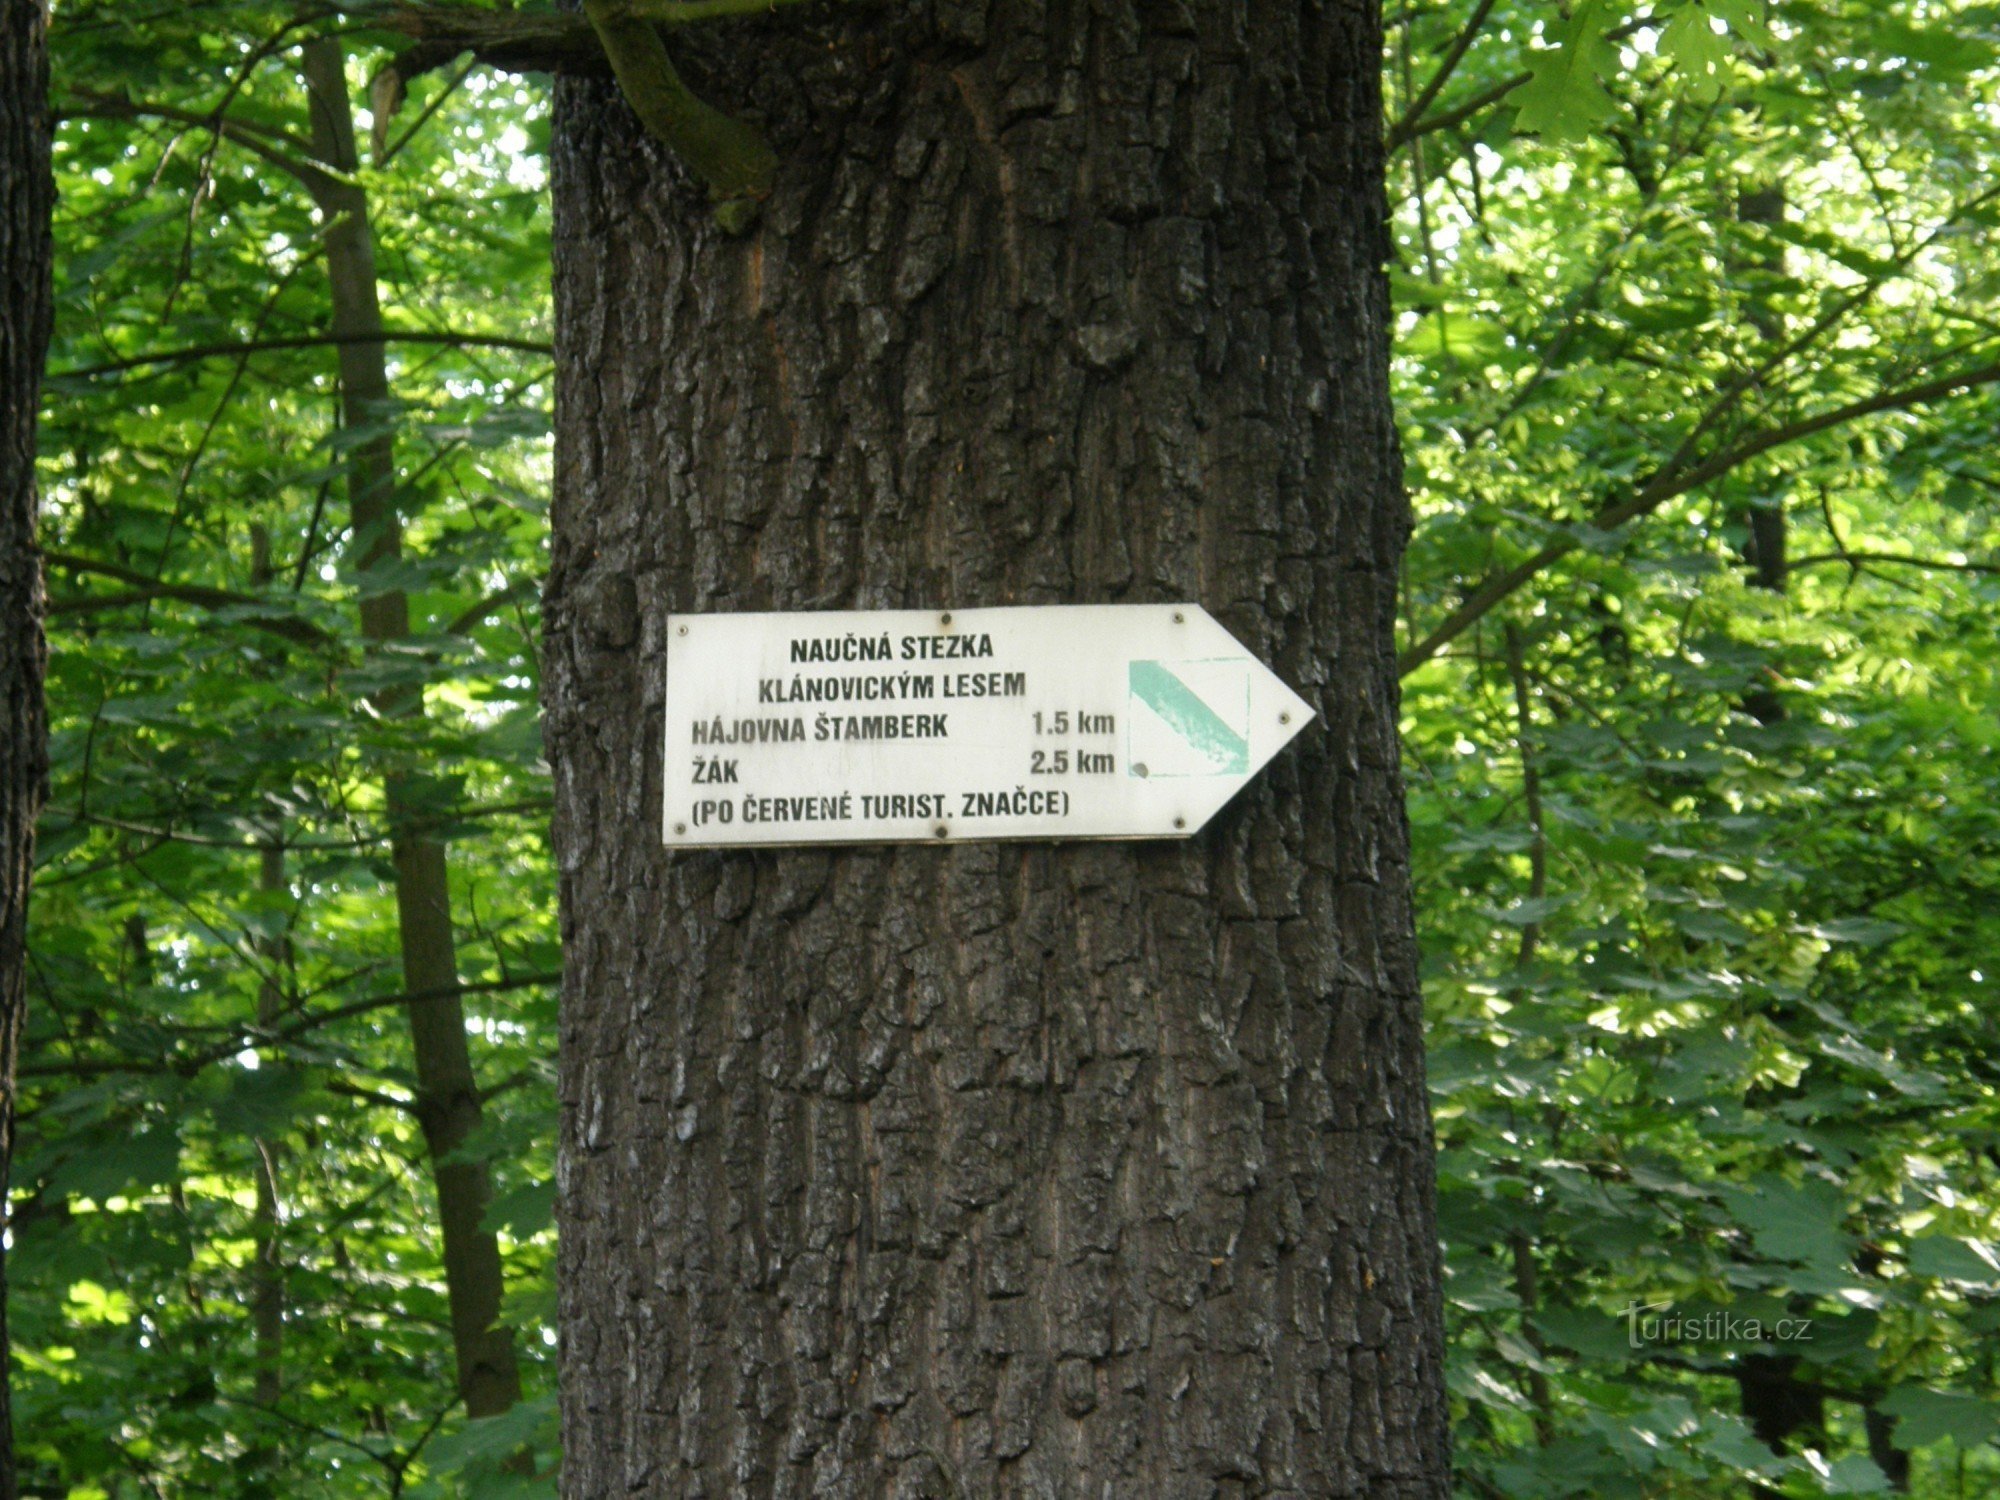 Partea I - Klánovický les - 6,3 km